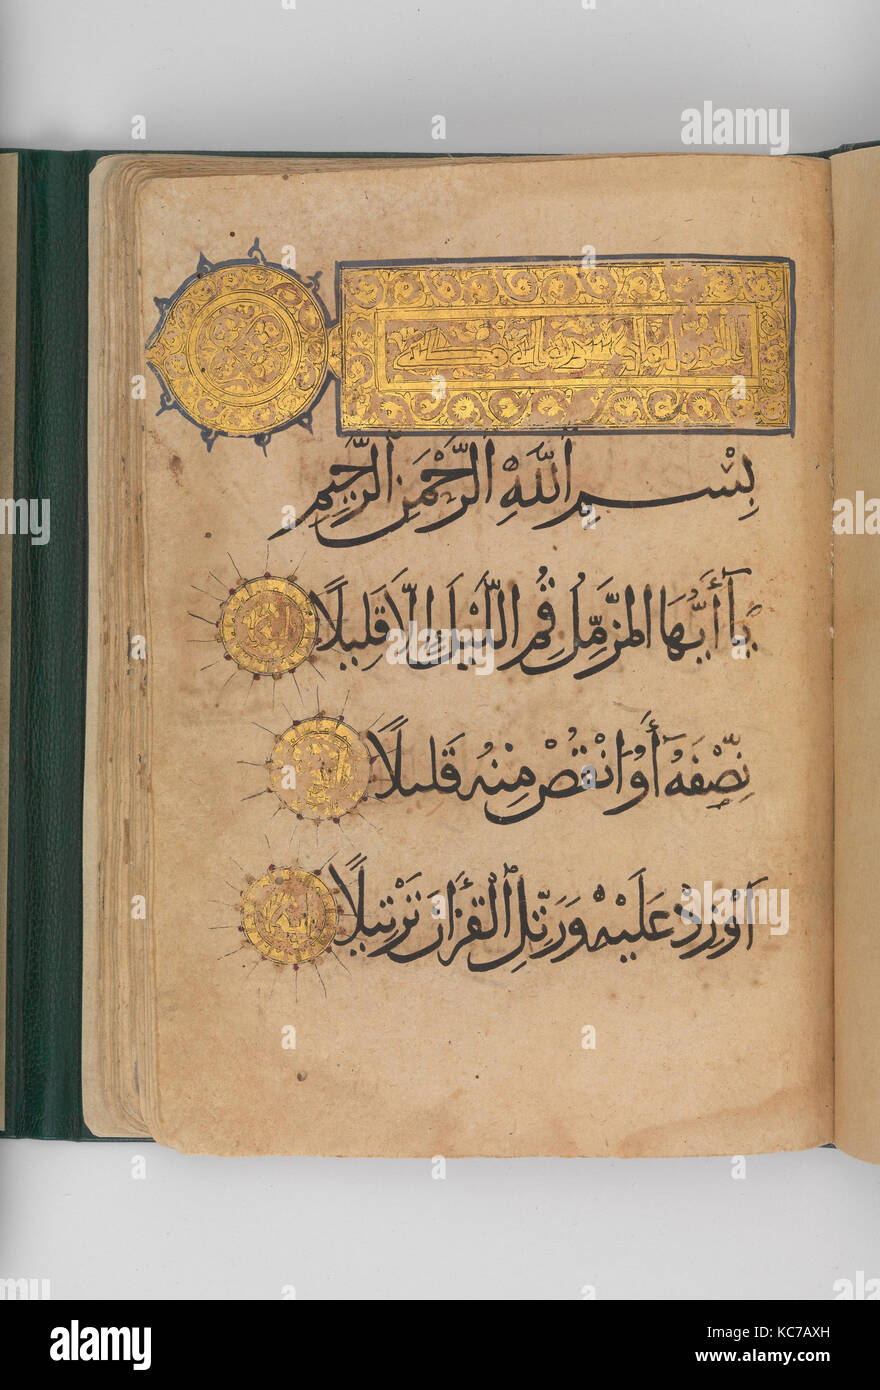 Abschnitt von einem Koran Manuskript vom A.H. 588/A.D. 1192 - 93 Stockfoto